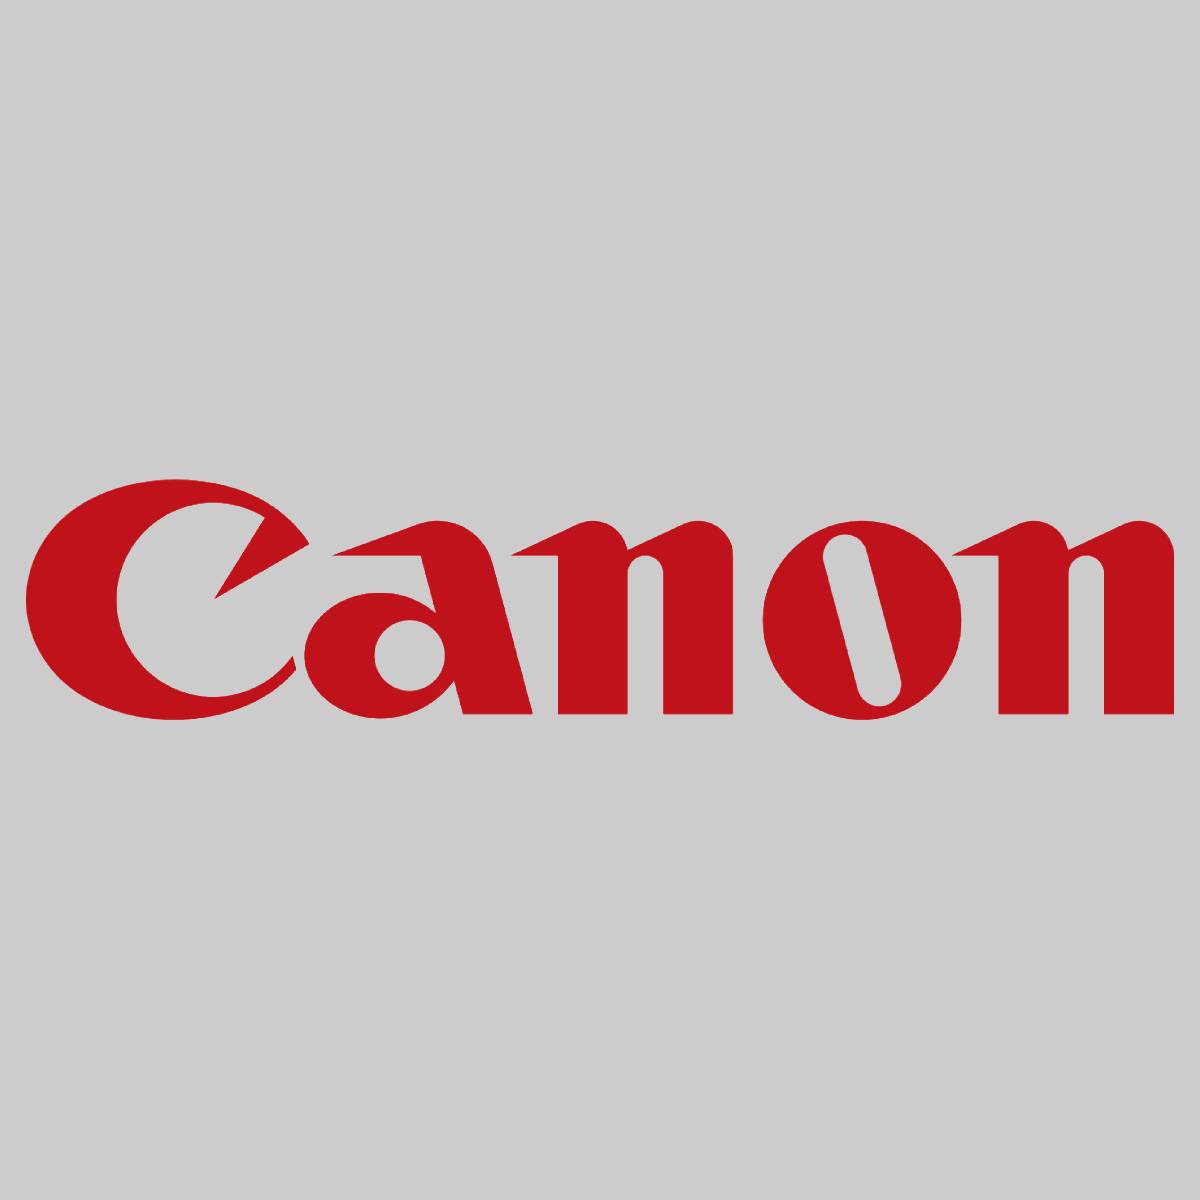 "Original Canon C-EXV44 Toner Black 6941B002 für ImageRunner C 9200 9270 9280